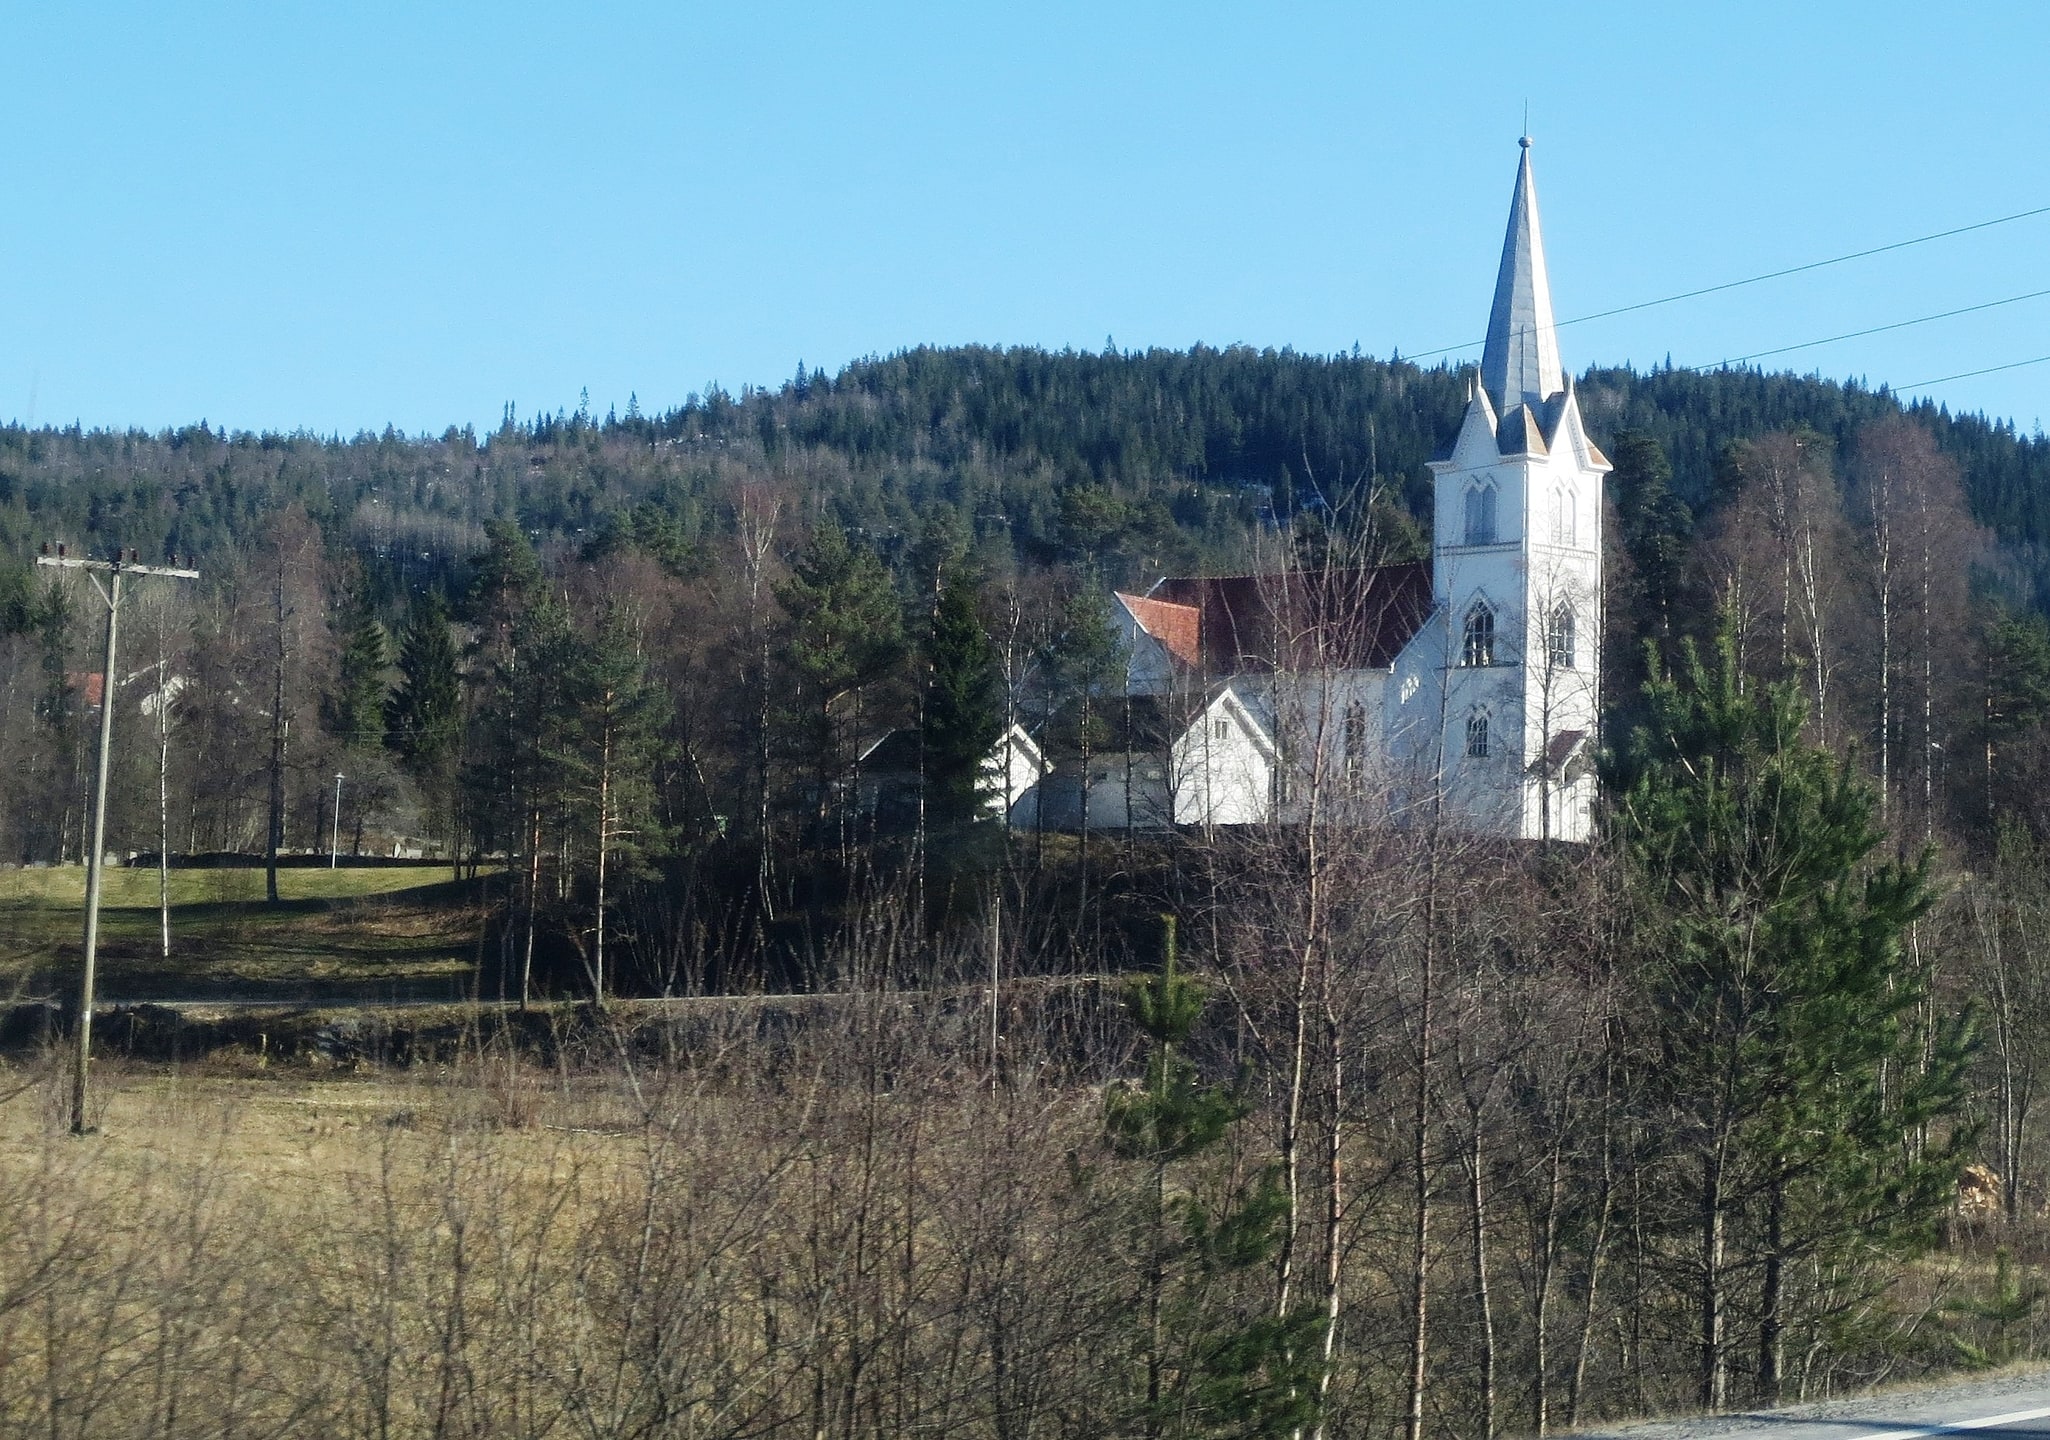 Evje, Norway